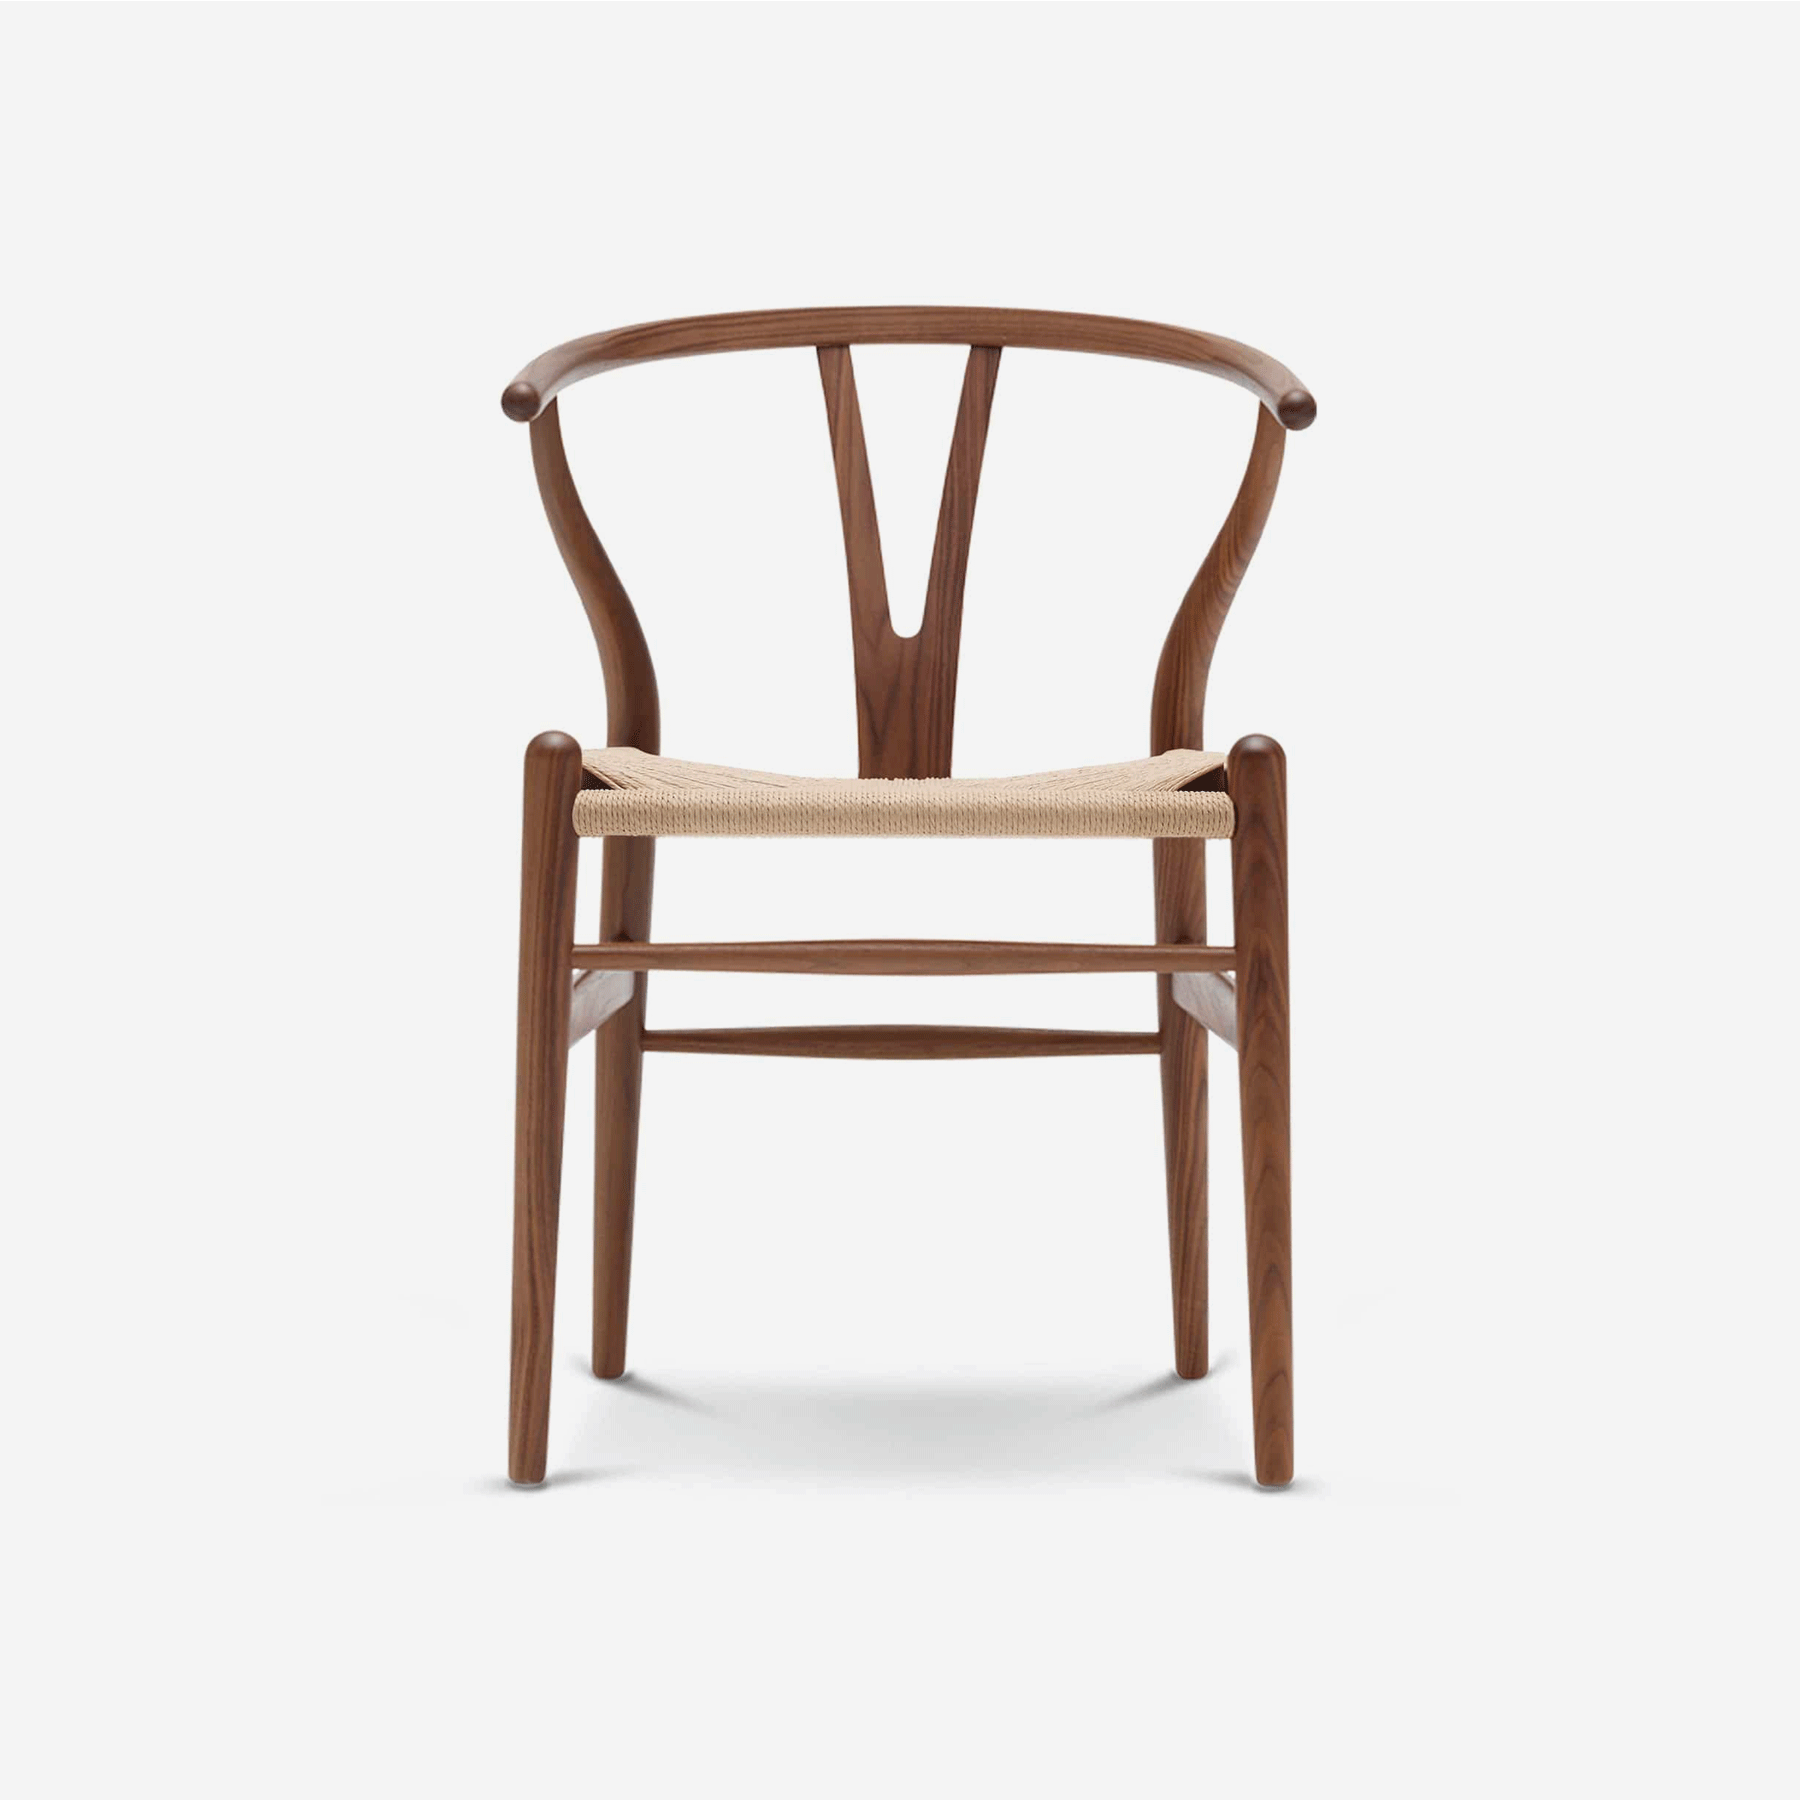 CH24 Wishbone Chair, Walnut - Moleta Munro Limited